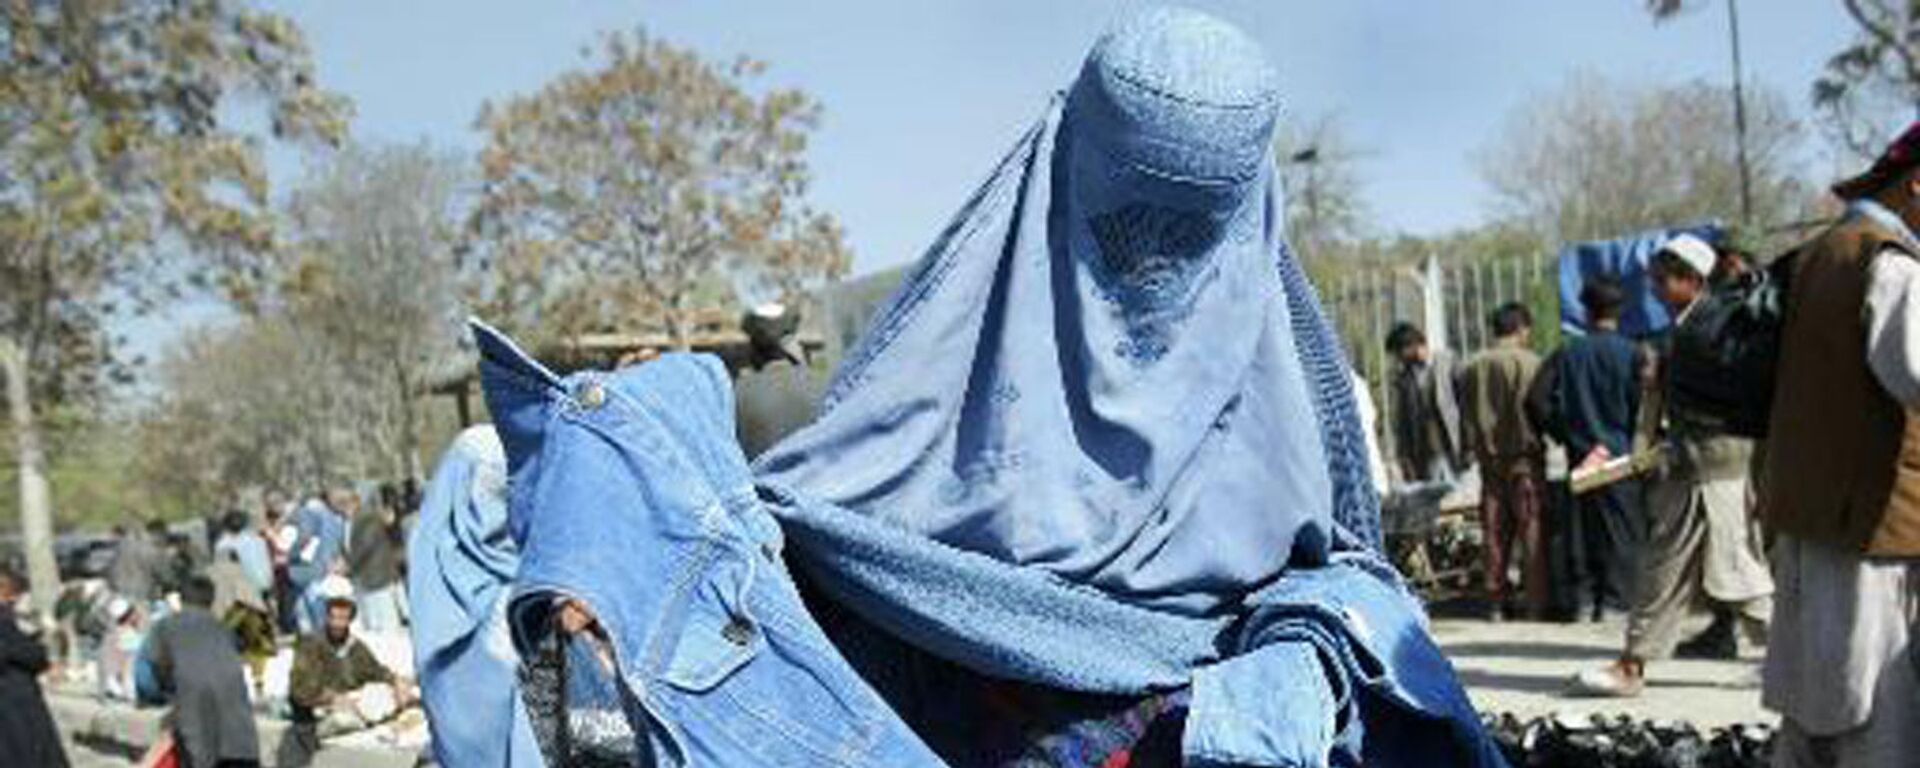 Афганская женщина выбирает голубые джинсы на улице Кабула, Афганистан, 2003 год - Sputnik International, 1920